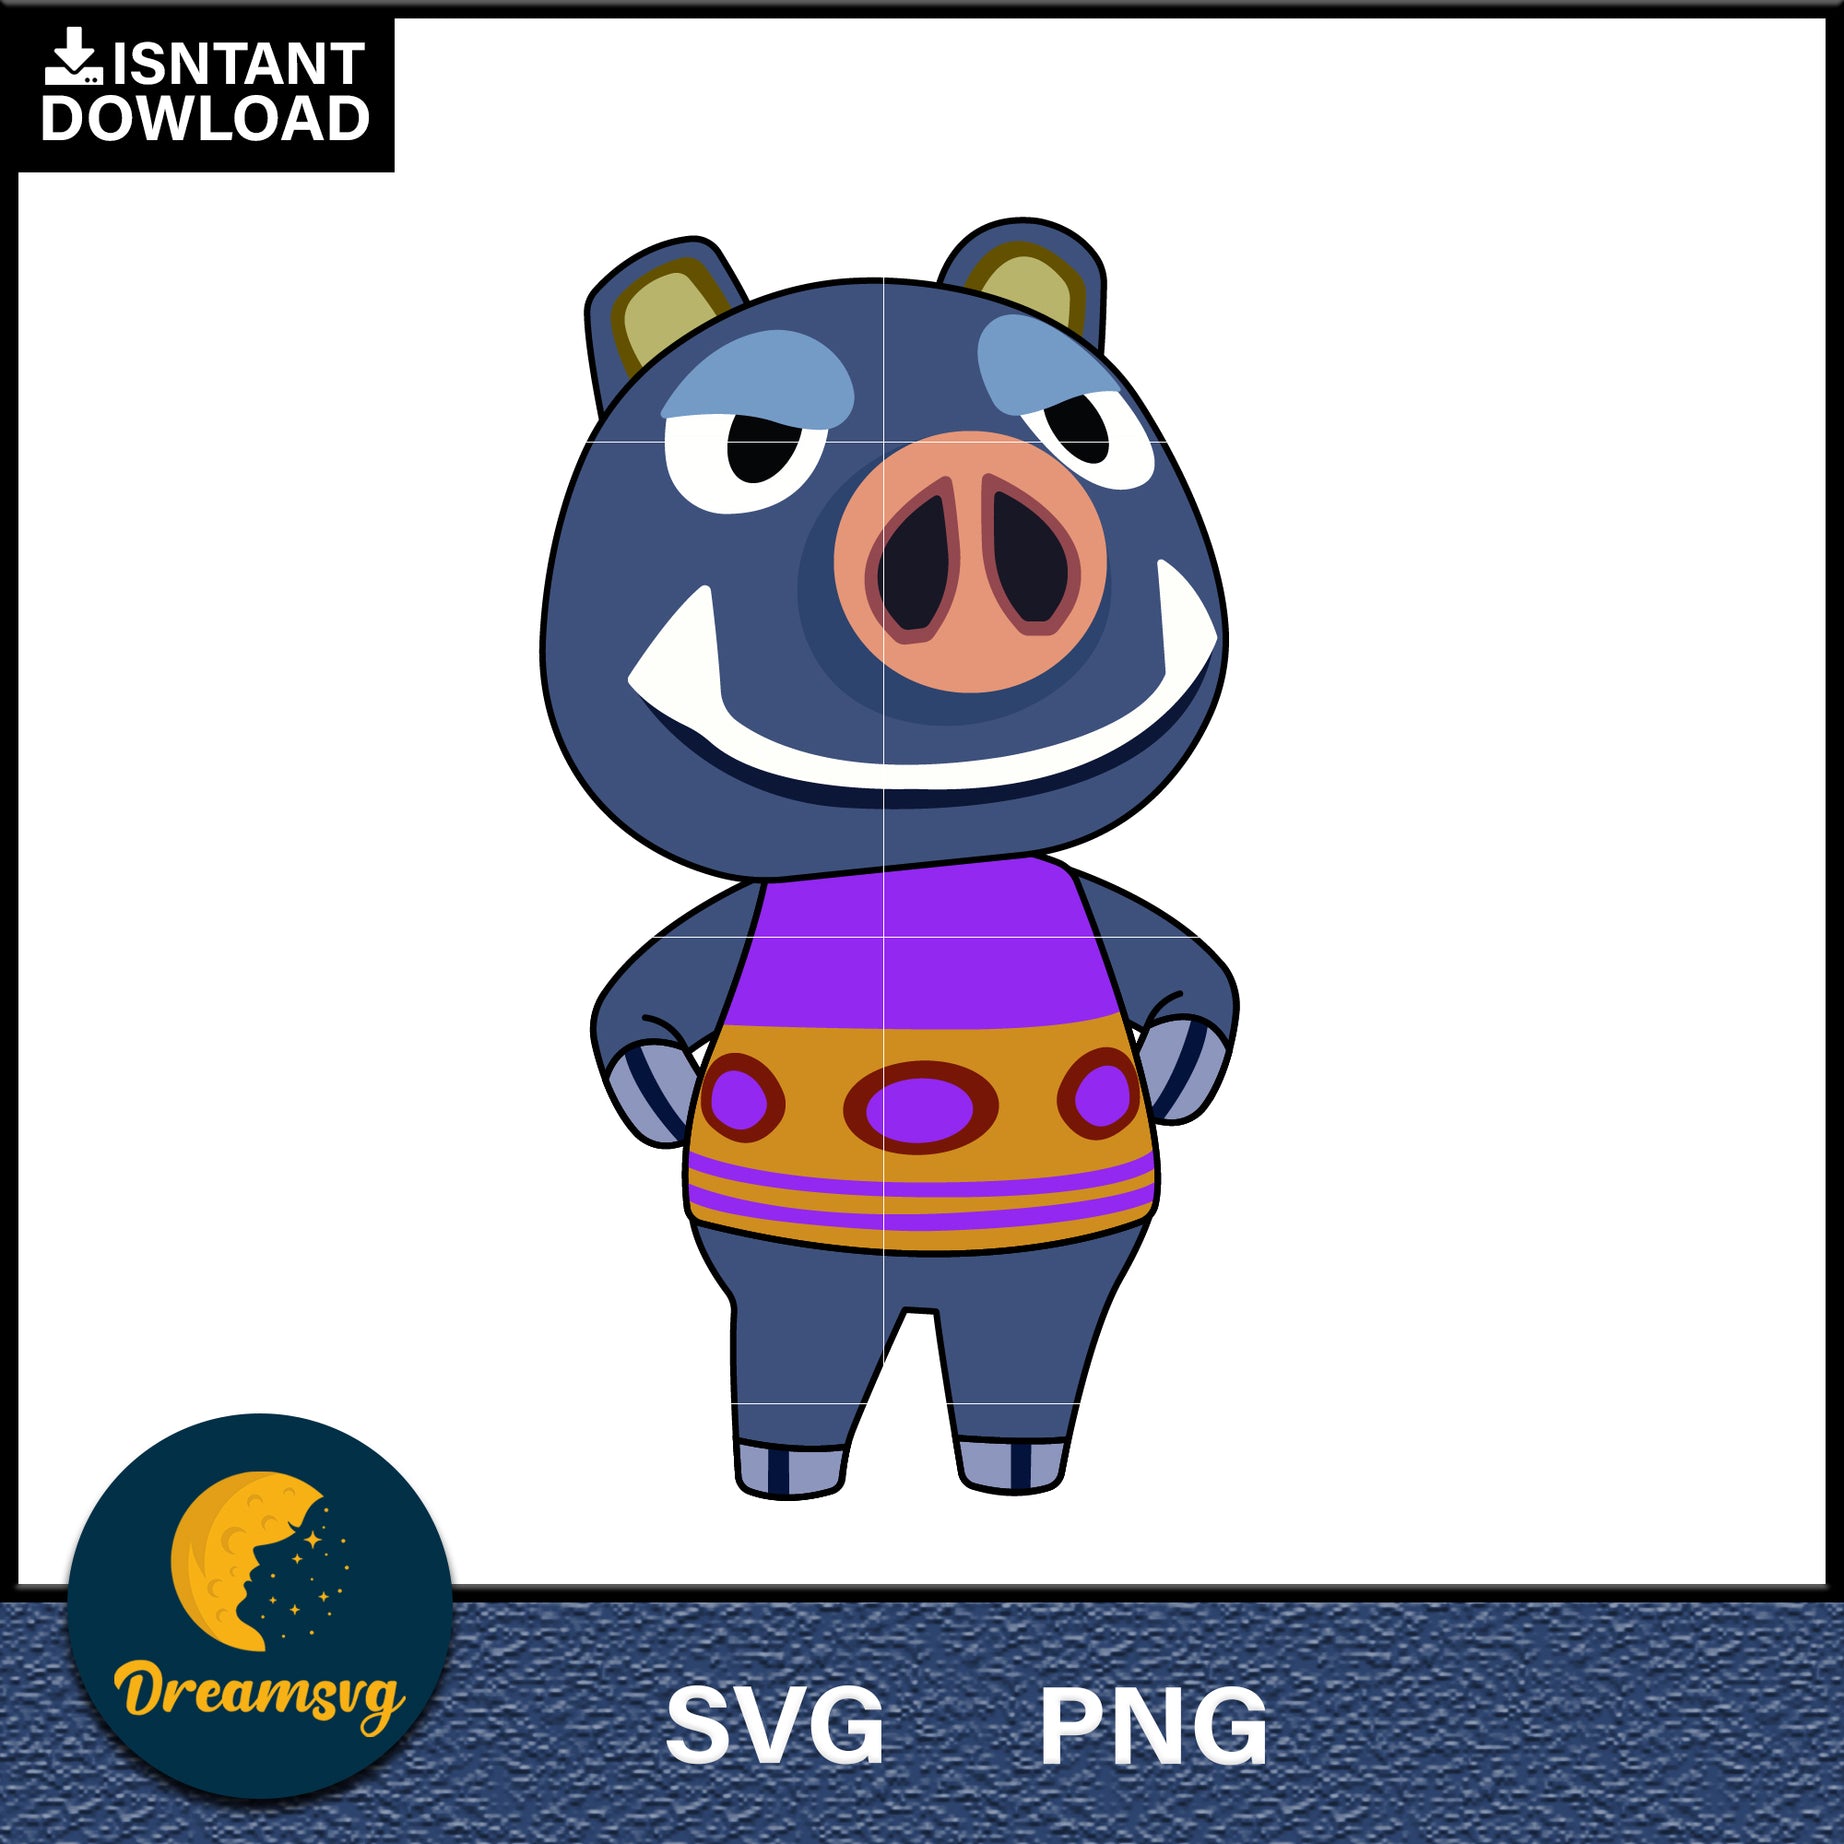 Boris Animal Crossing Svg, Animal Crossing Svg, Animal Crossing Png, Cartoon svg, svg, png digital file